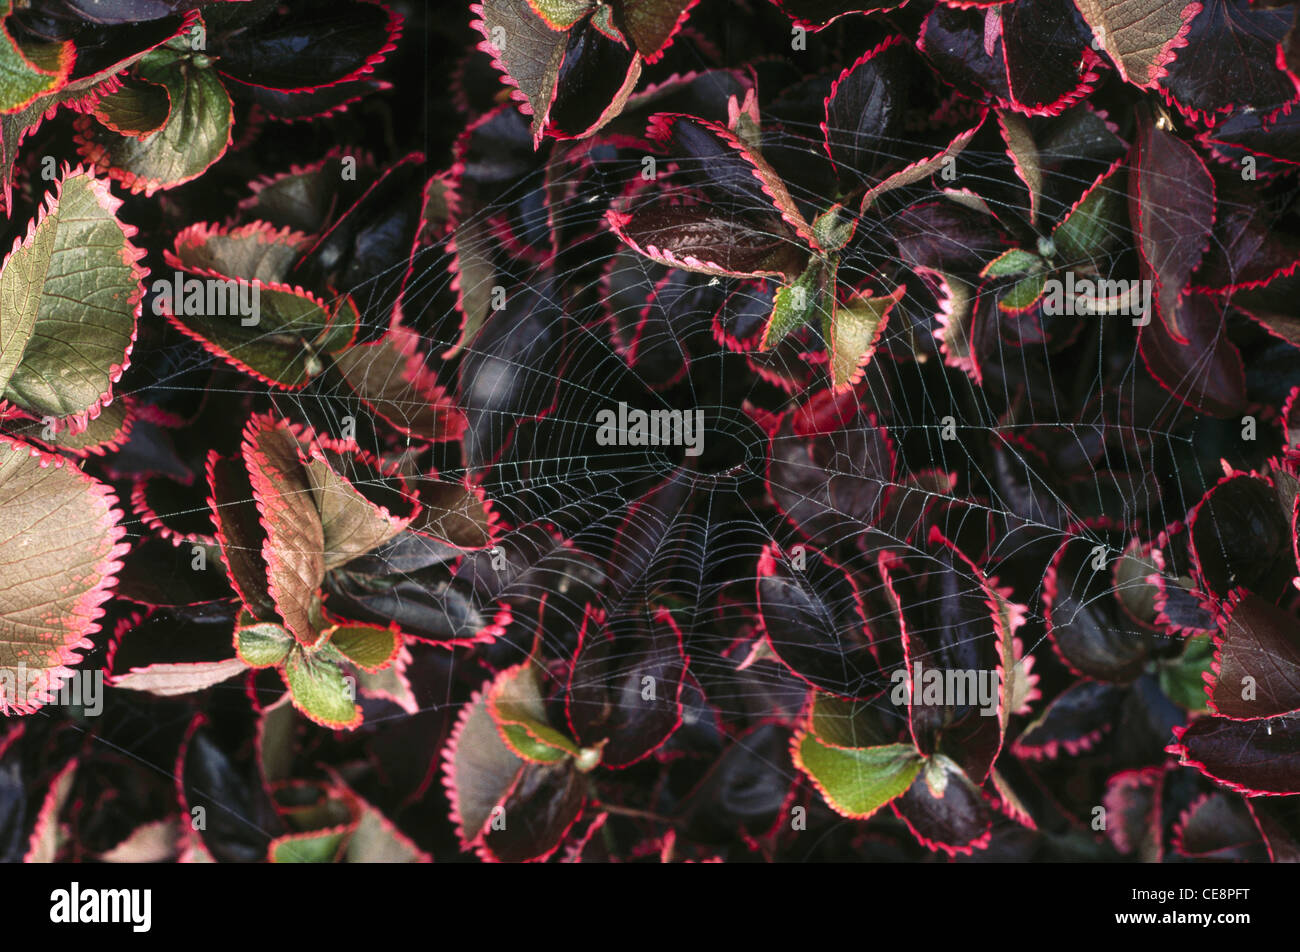 NMK 80364 : Spider web e rosse foglie di colore nero Foto Stock